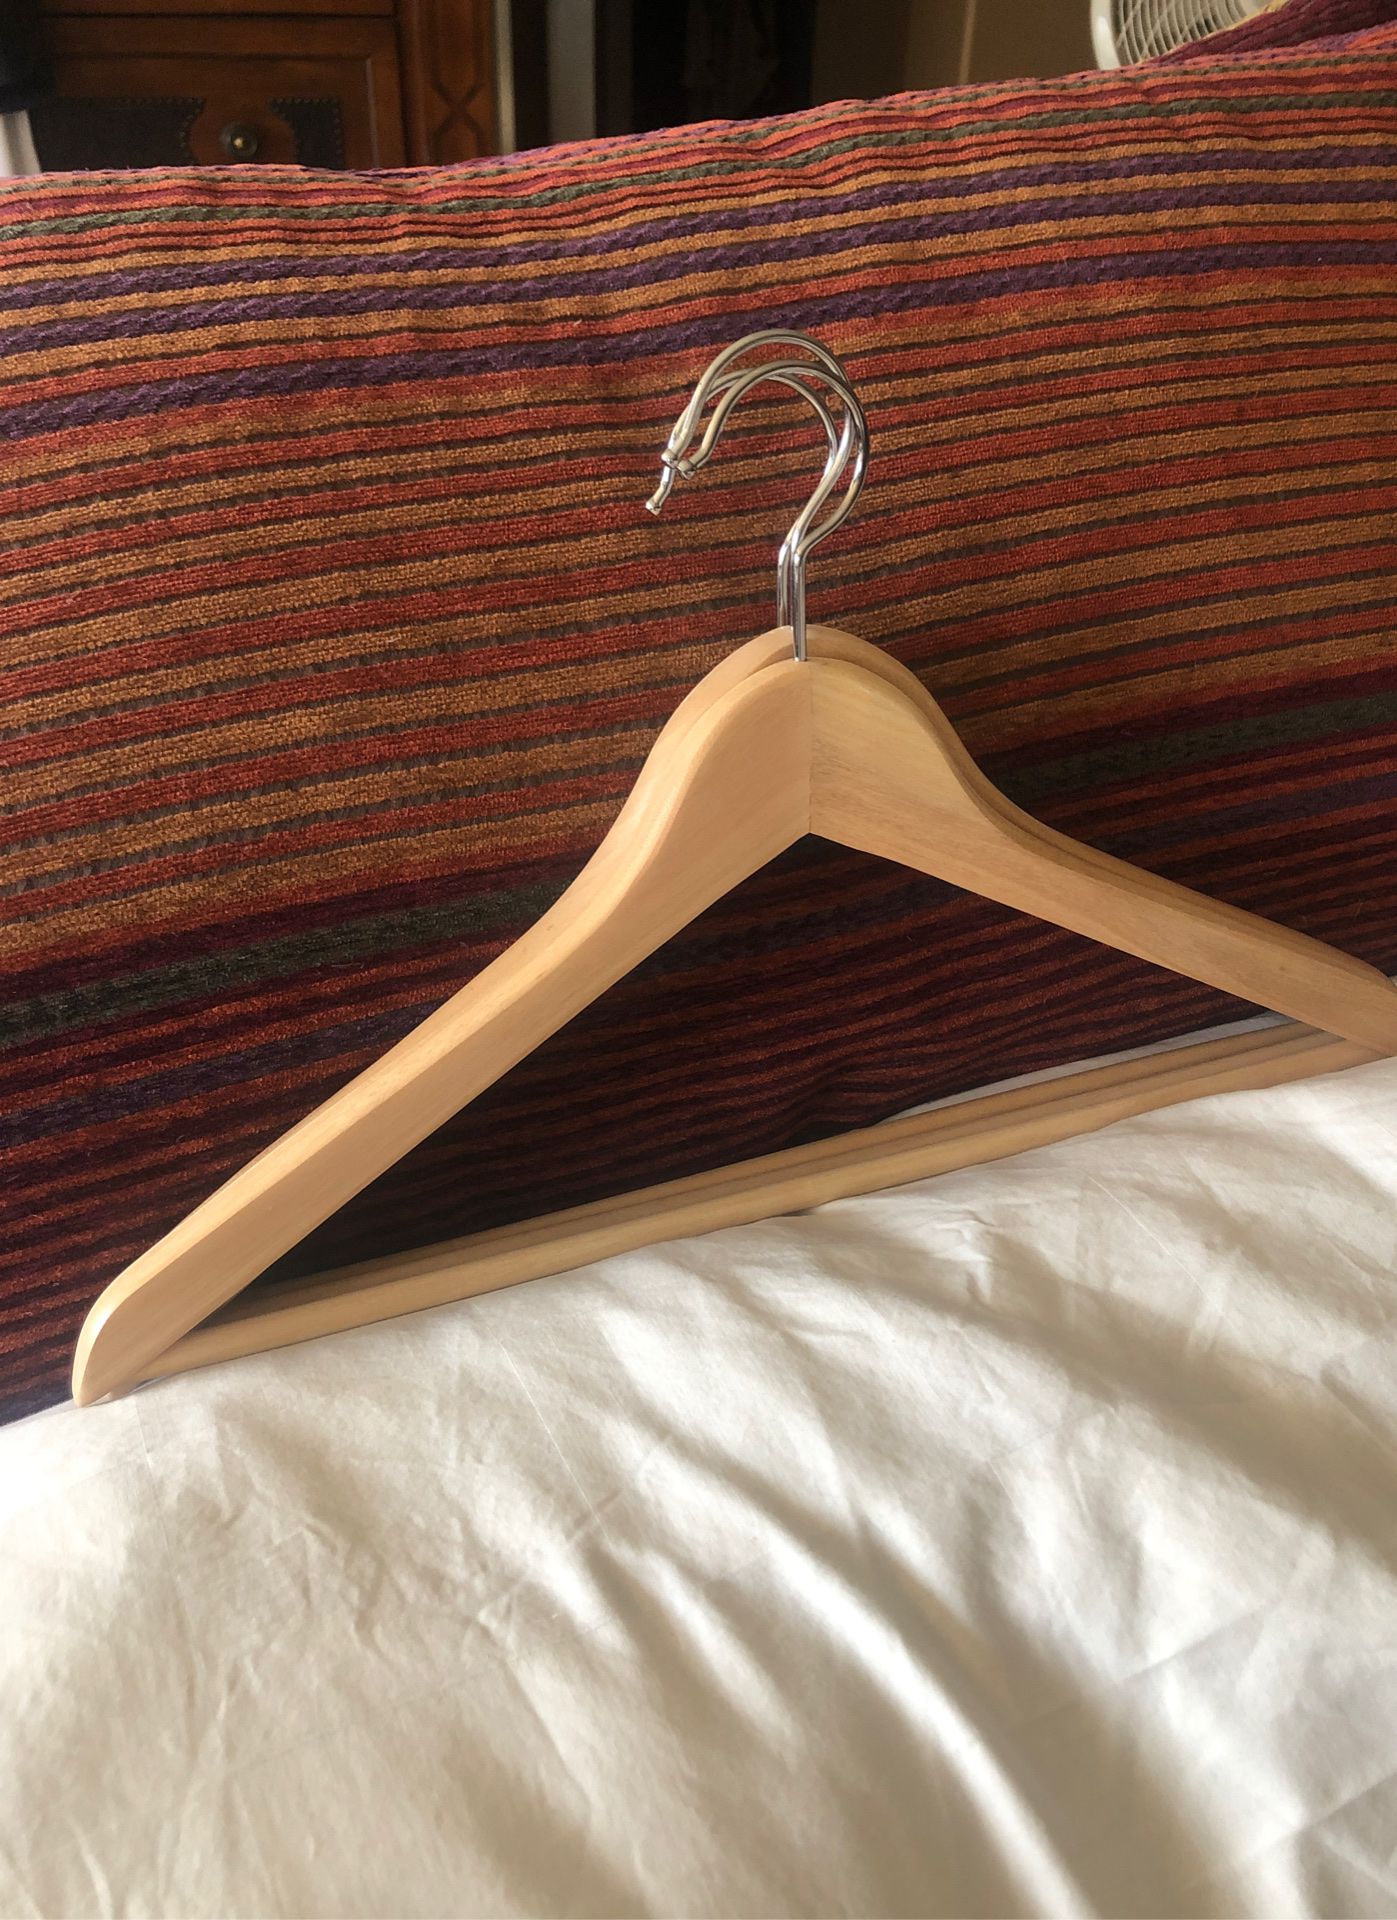 Wood hangers